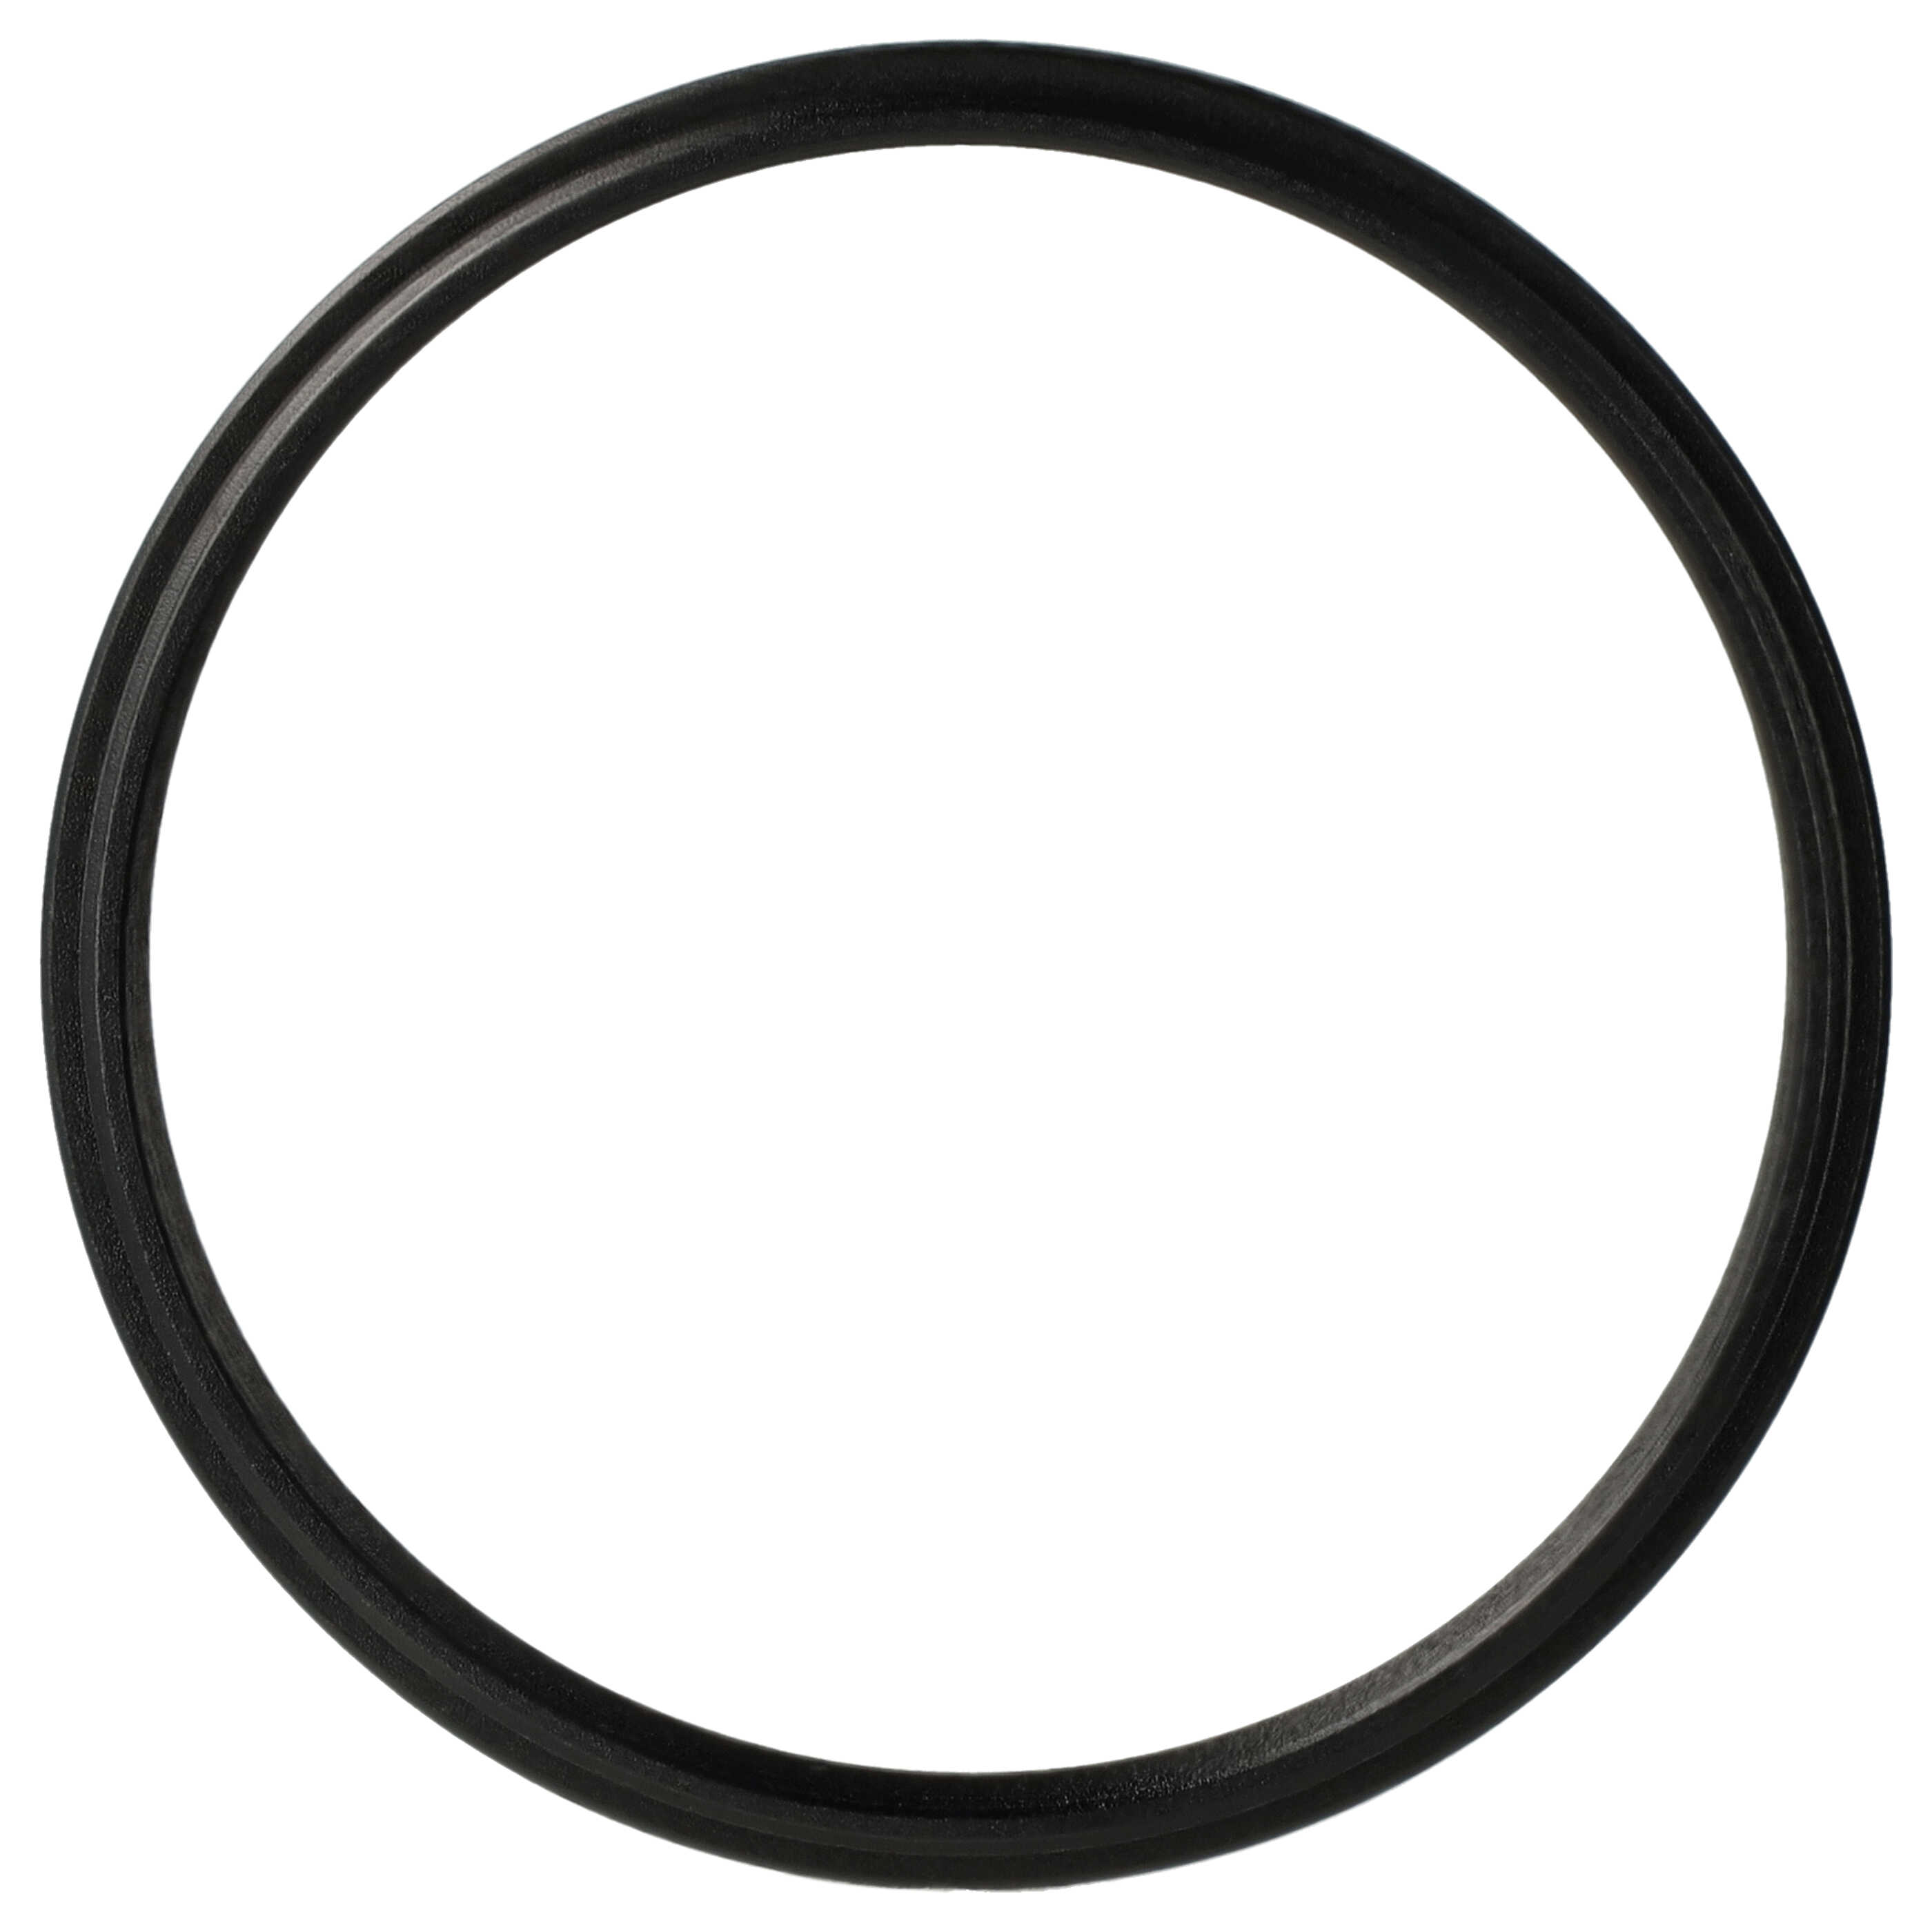 Step-Down-Ring Adapter von 52 mm auf 49 mm passend für Kamera Objektiv - Filteradapter, Metall, schwarz